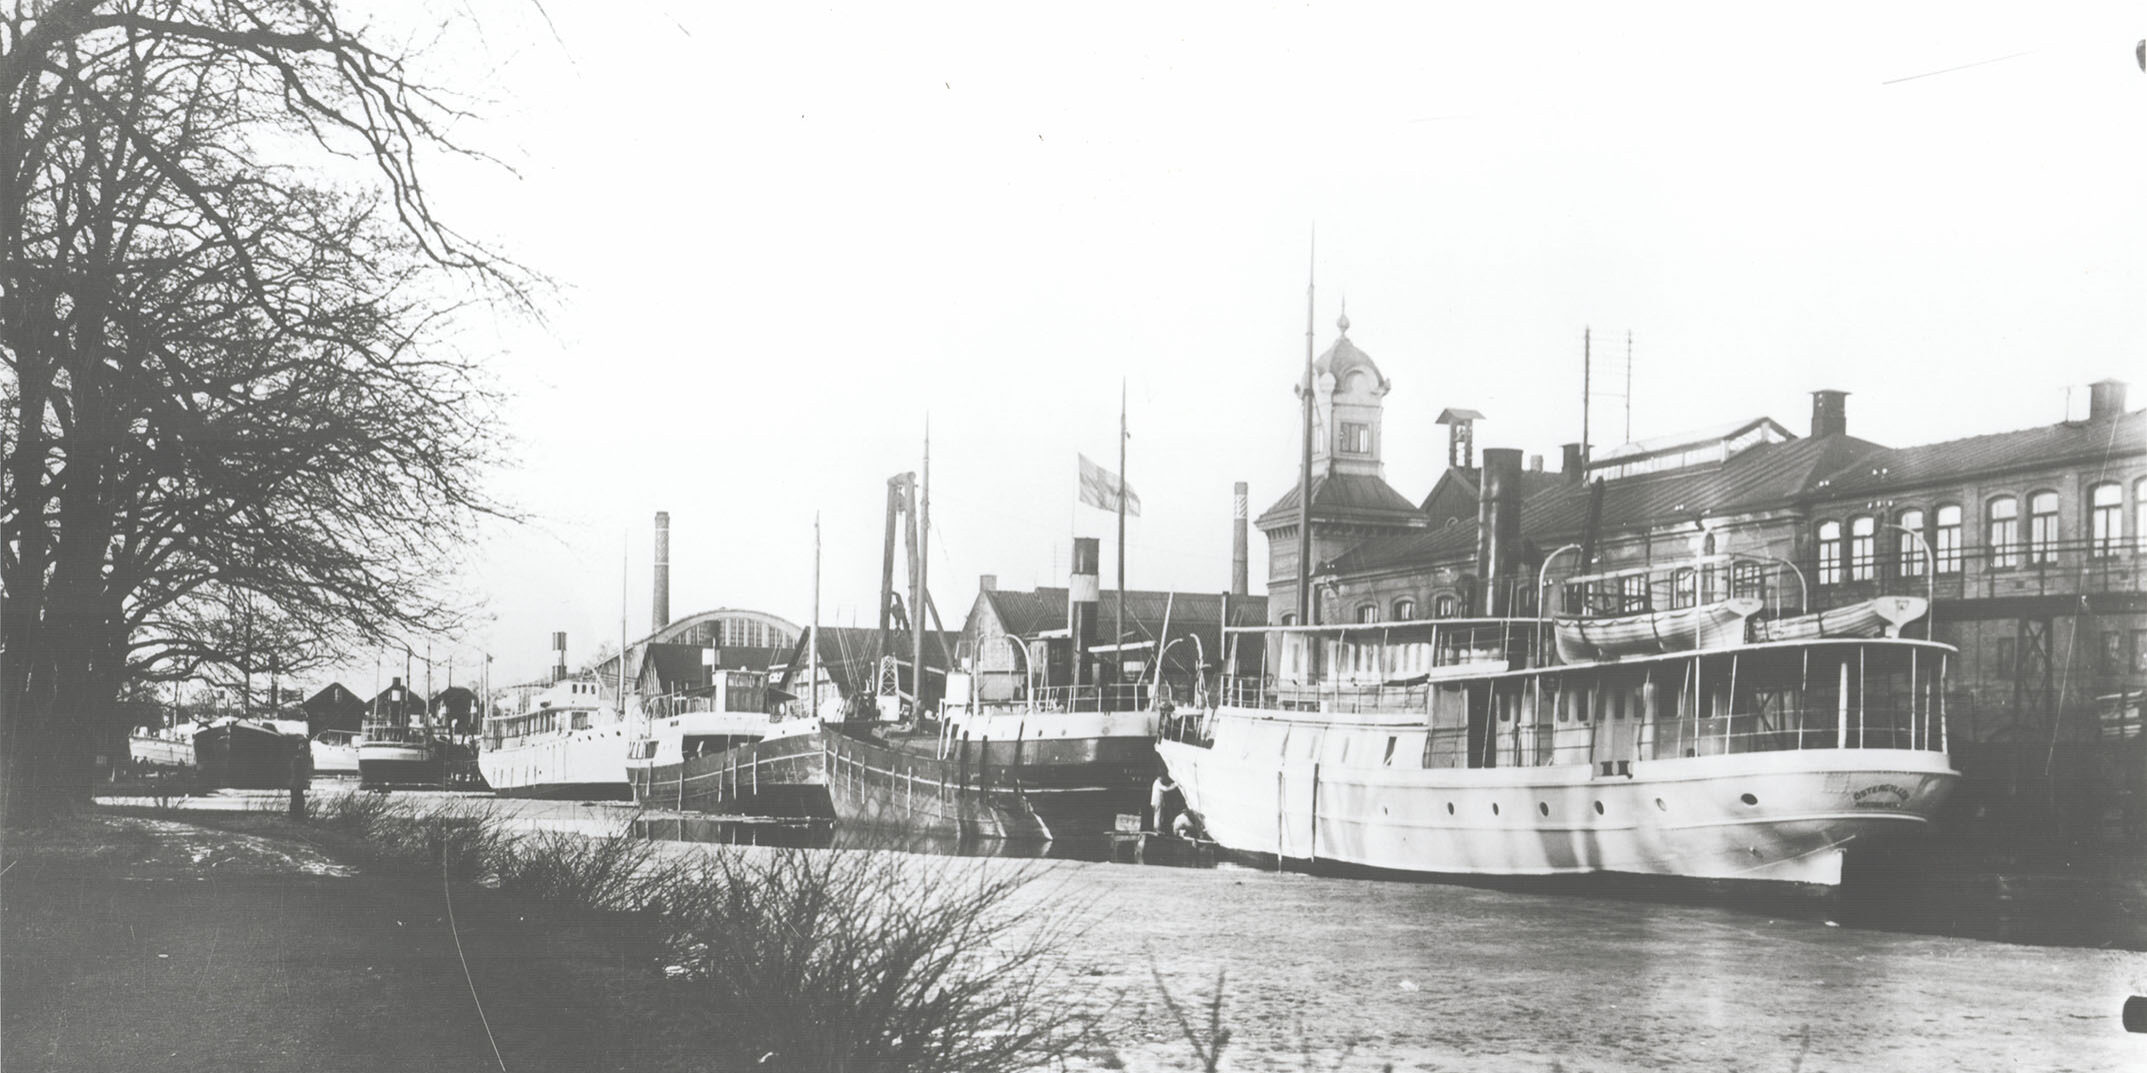 Ett svartvitt historiskt foto över området vid Motala Verkstad. Flera båtar ligger förankrade i Göta kanal intill industribyggnaderna.